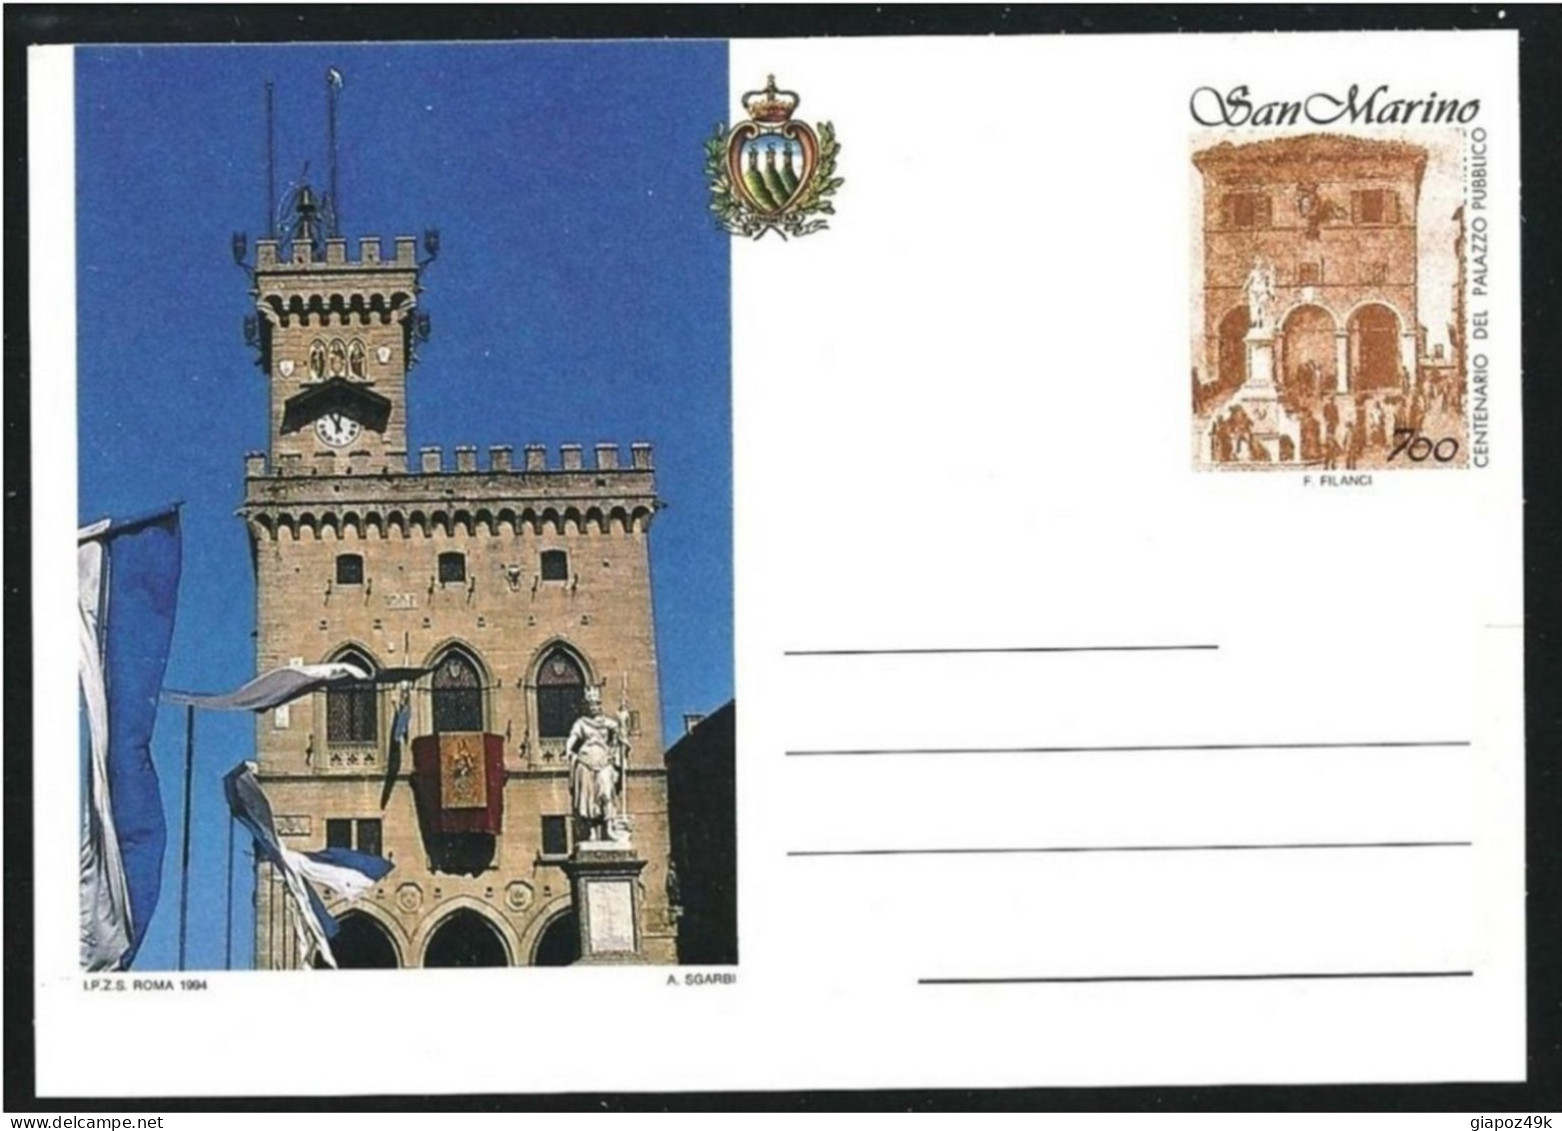 ● San MARINO 1994 ֍ Palazzo Consiglio ● 2 Cartoline Postali ● Nuovi ** ● Serie Completa ● Cat. ? € ● - Ganzsachen